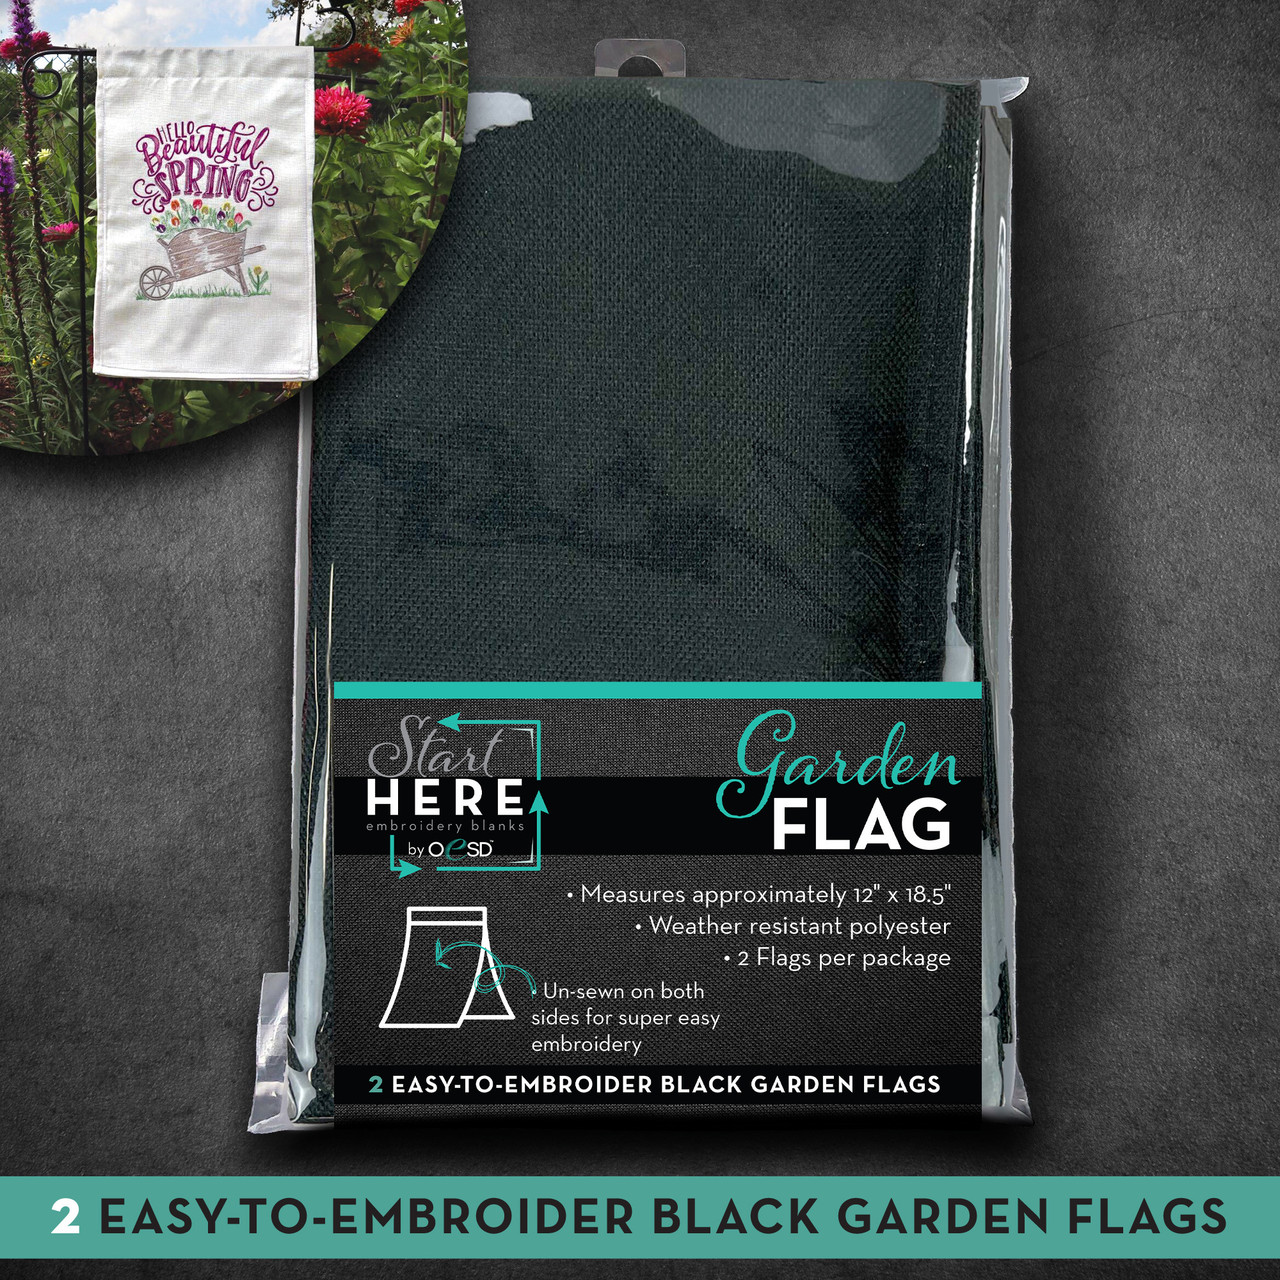 OESD Garden Flag Black 2pk